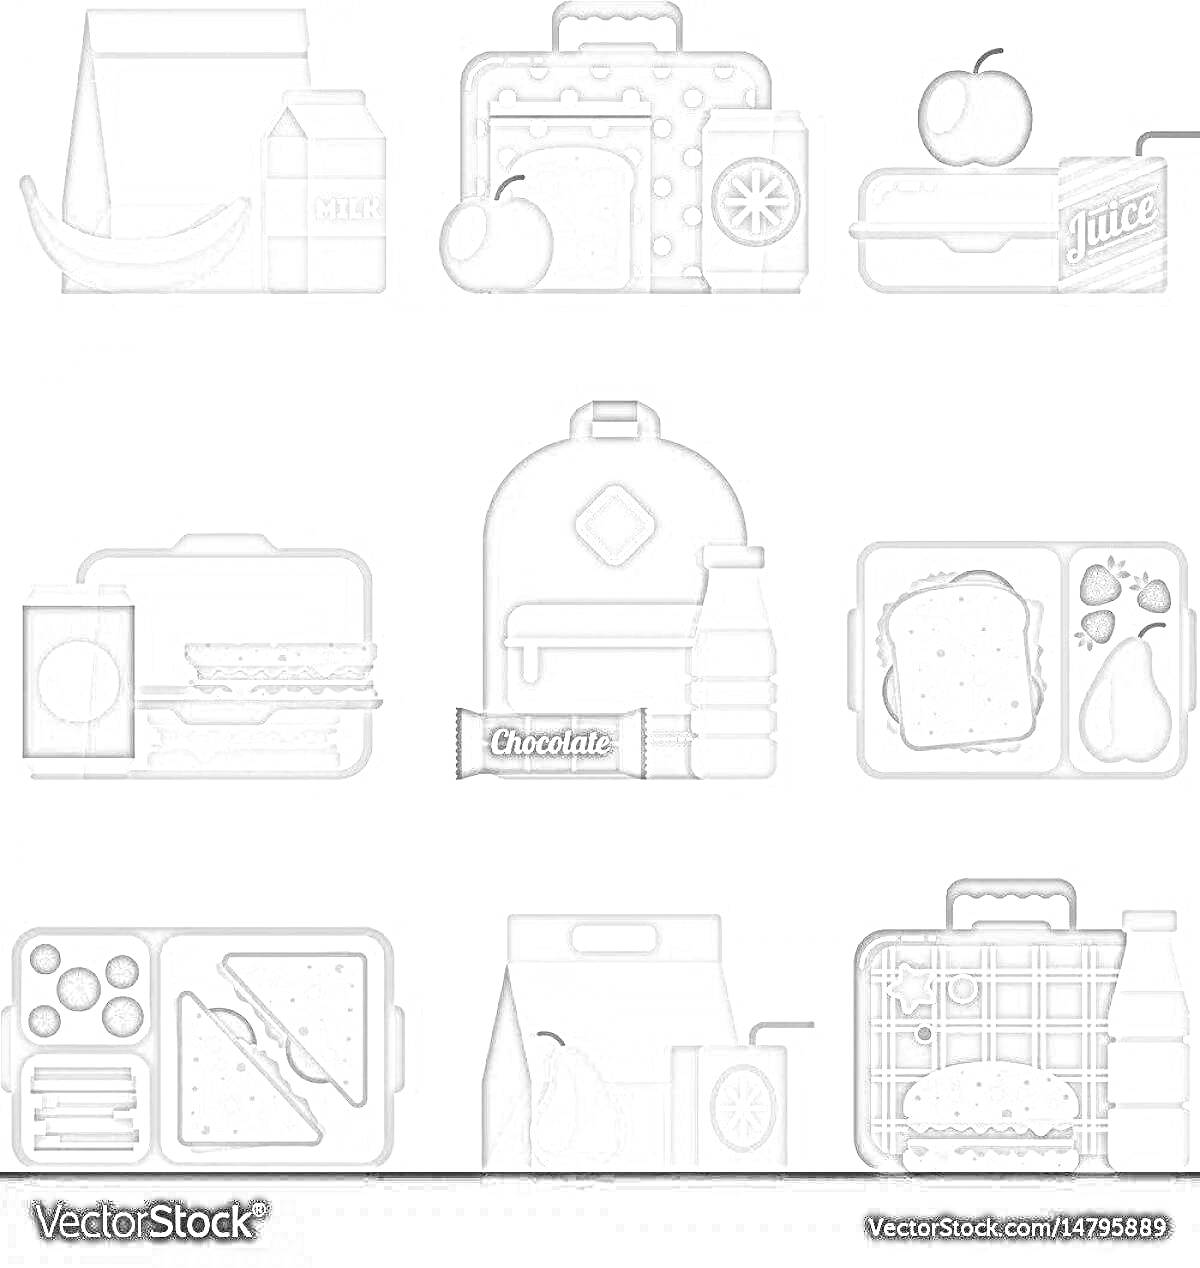 Ланч бокс с различными элементами (сумка, коробка с сендвичами, яблоко, коробка с соком, шоколад, бутылка воды, банан, молоко)